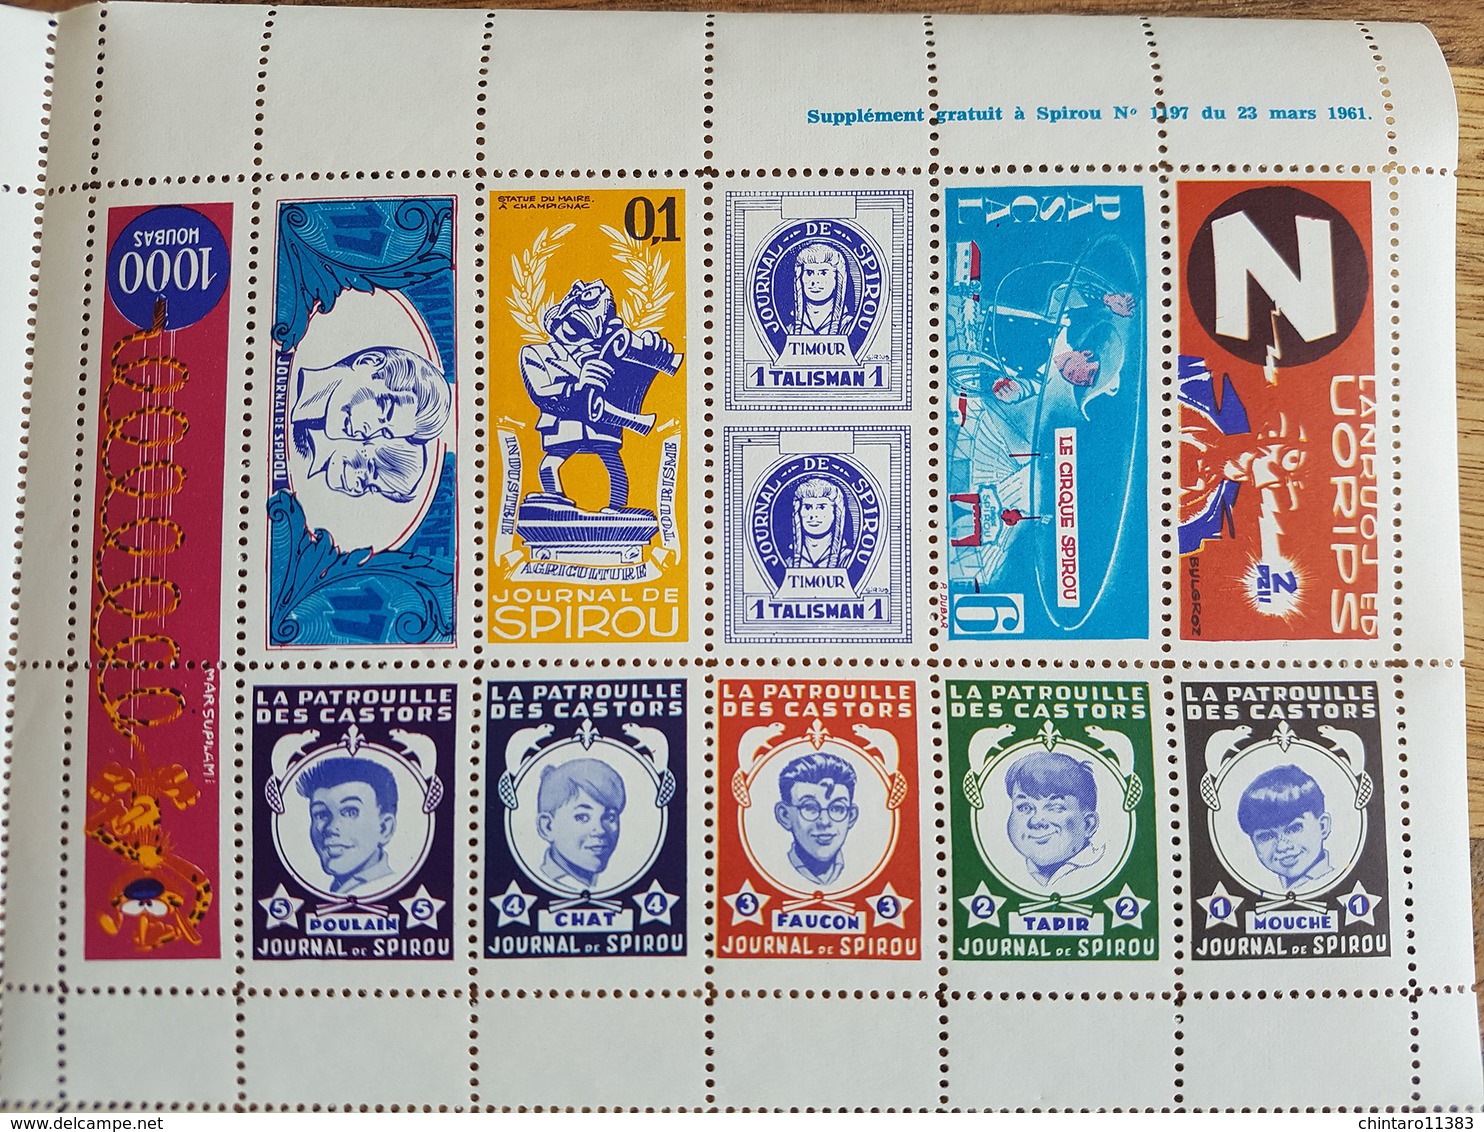 Feuillet de faux timbres (Supplément gratuit à Spirou 1961) distribué par "ESSO" + Pin's émaillé + Divers - RARE